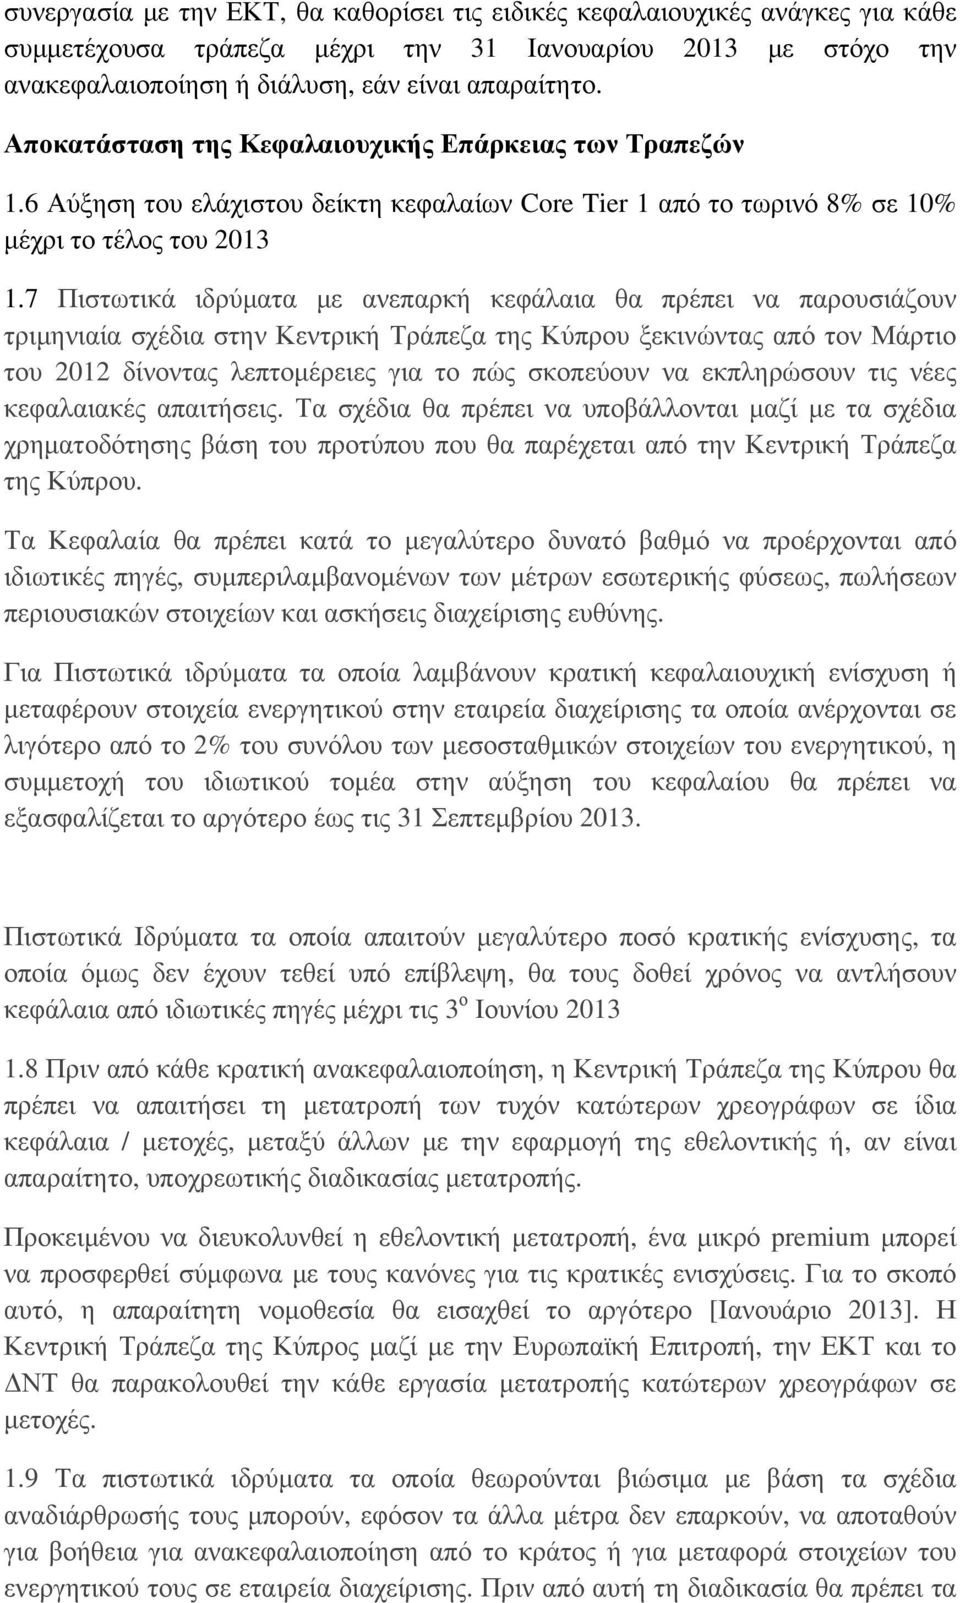 7 Πιστωτικά ιδρύματα με ανεπαρκή κεφάλαια θα πρέπει να παρουσιάζουν τριμηνιαία σχέδια στην Κεντρική Τράπεζα της Κύπρου ξεκινώντας από τον Μάρτιο του 2012 δίνοντας λεπτομέρειες για το πώς σκοπεύουν να